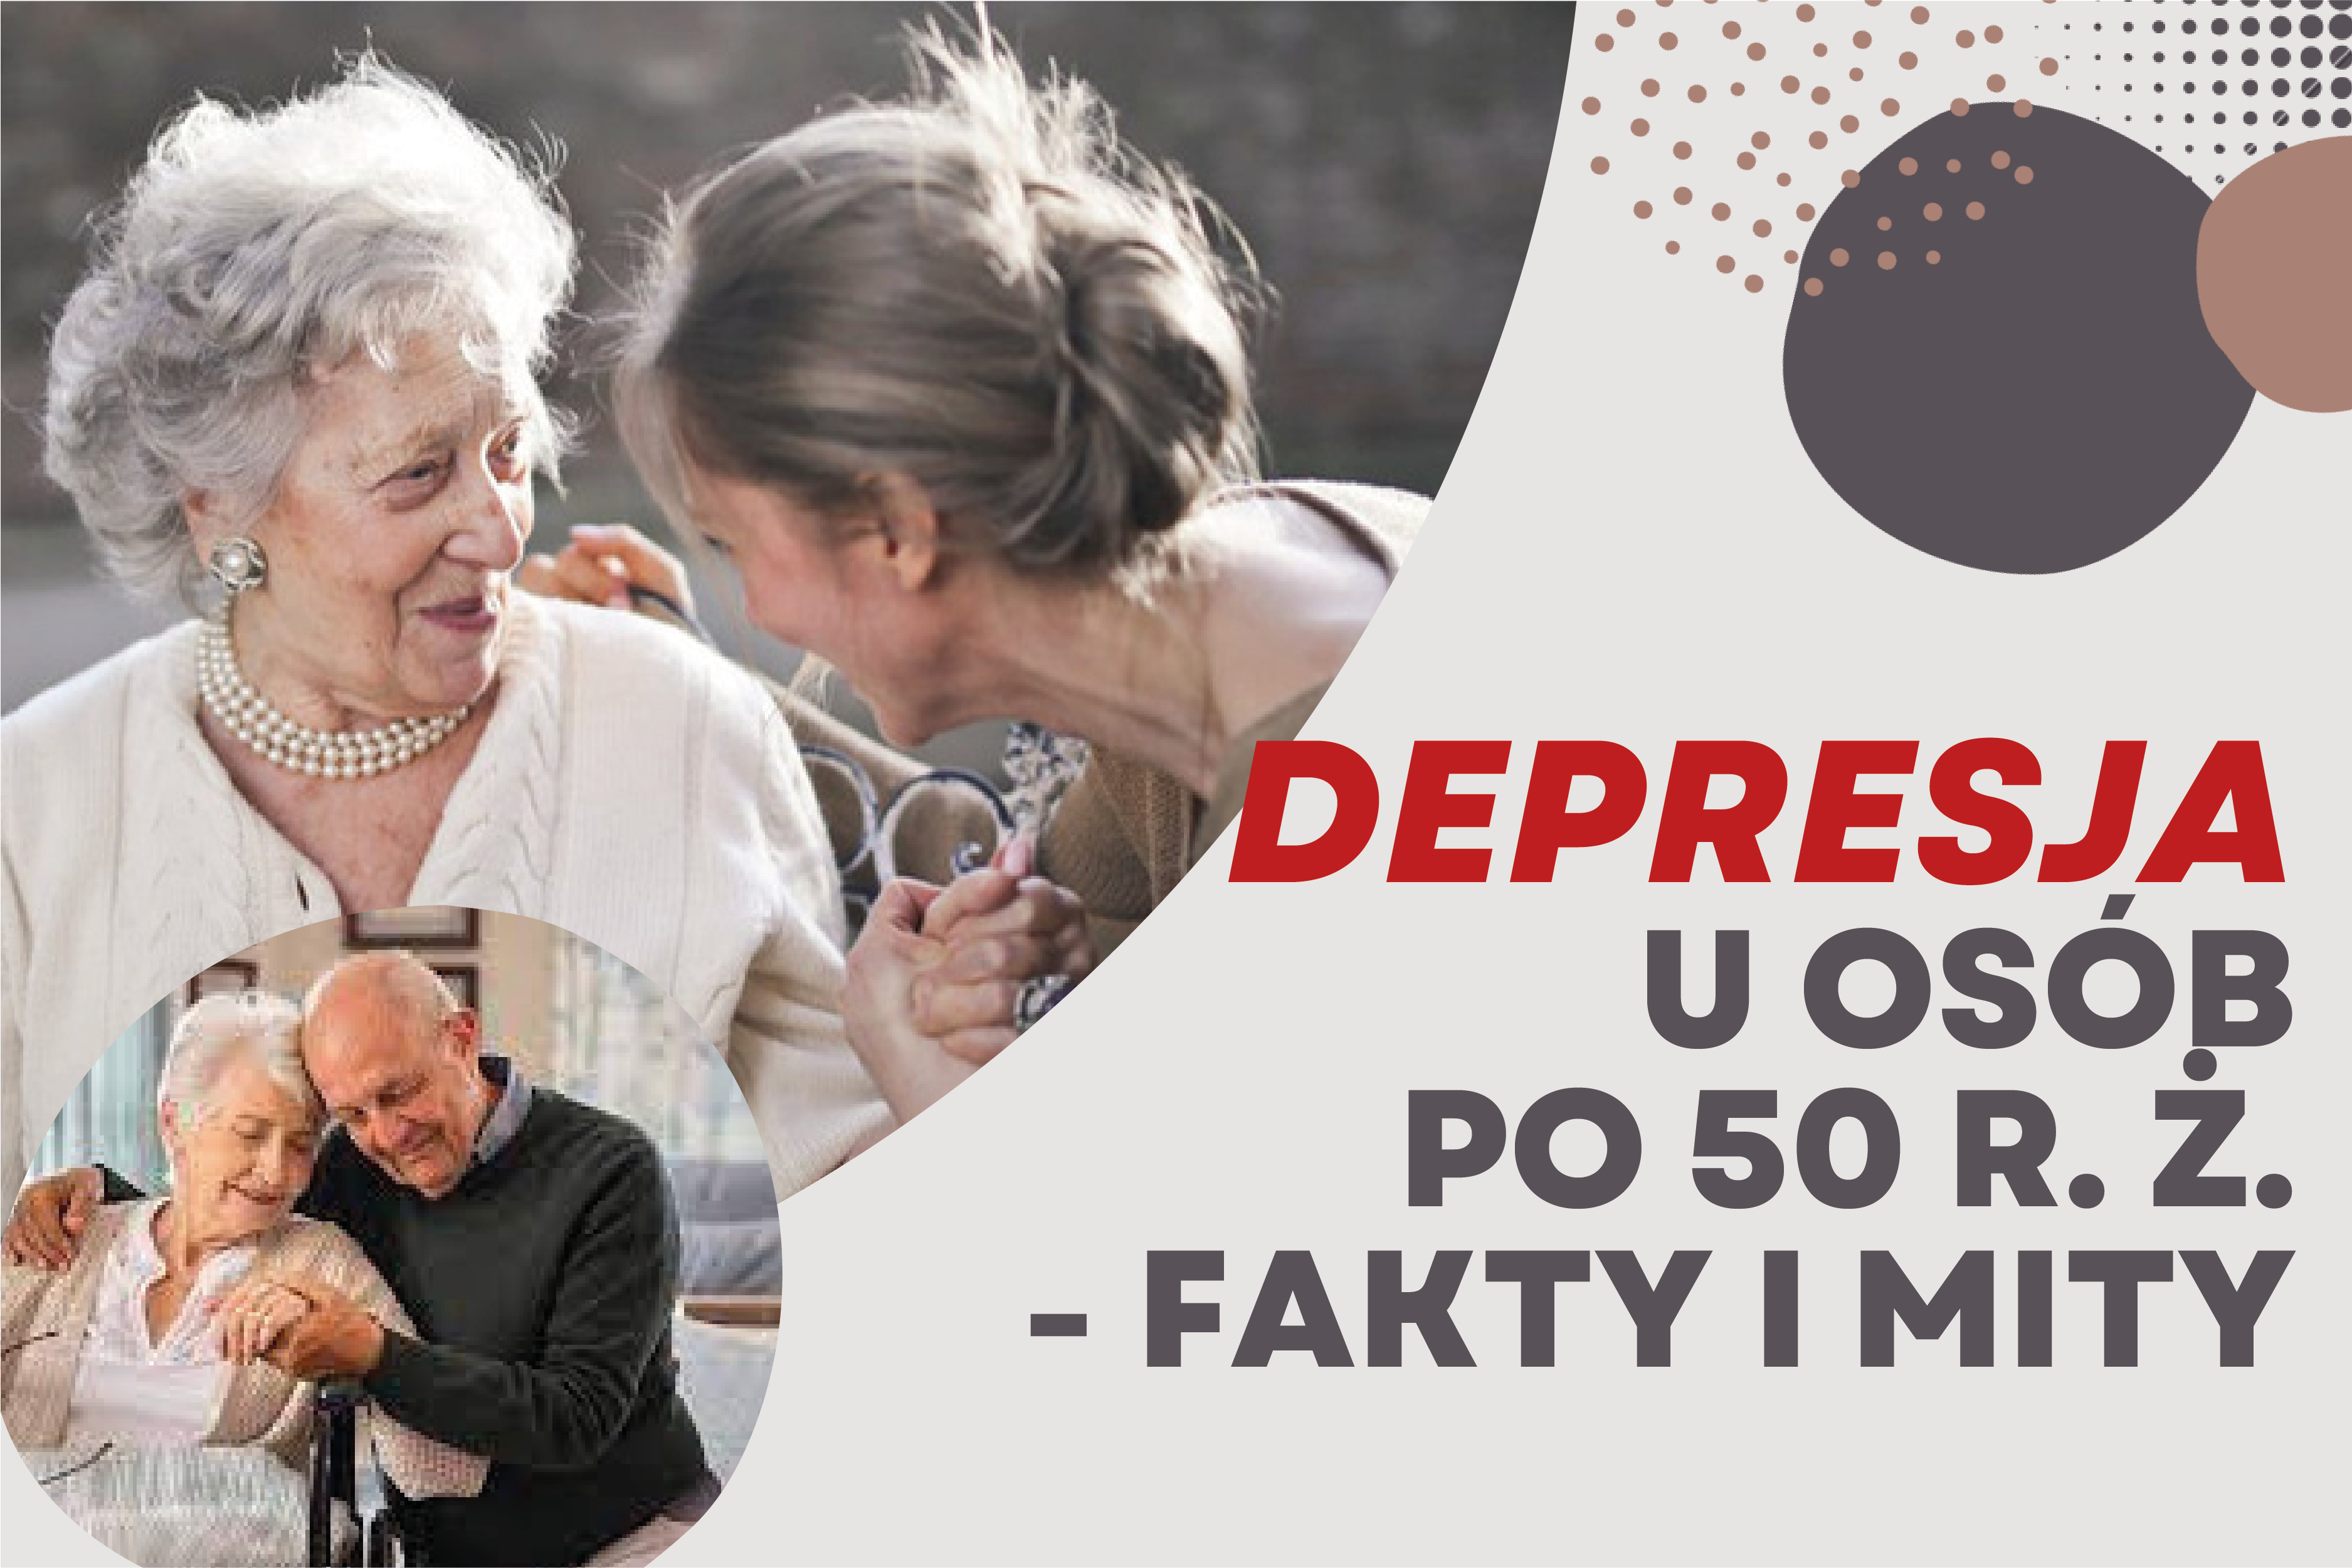 plakat depresja u osób po 50 r.ż fakty i mity grafika przedstawia seniorów